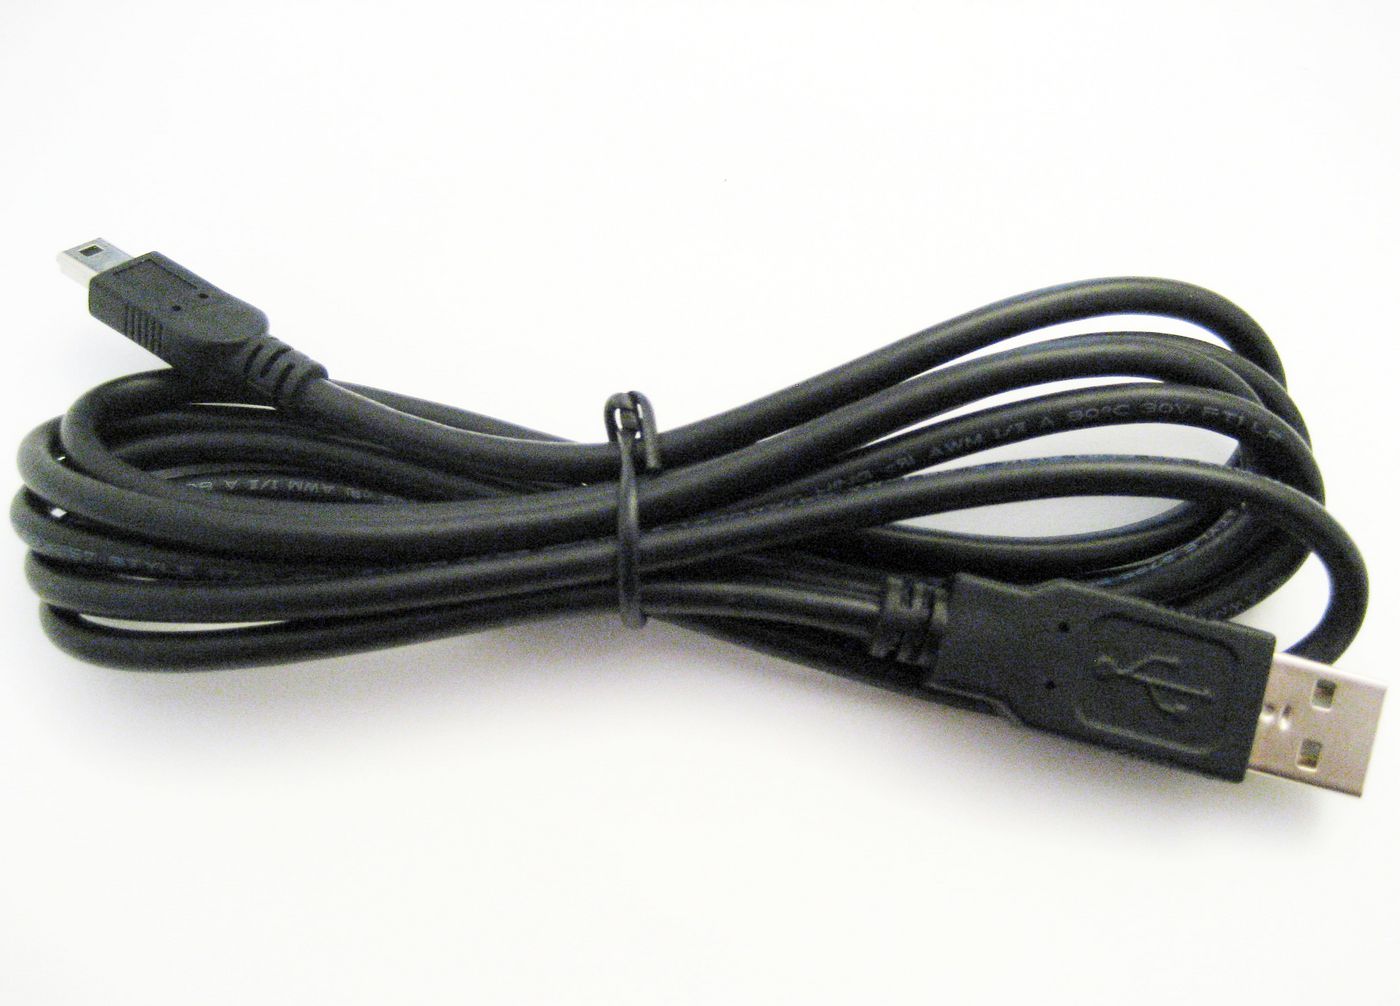 Konftel 900103388 USB Cable 2.0, 1.5m 